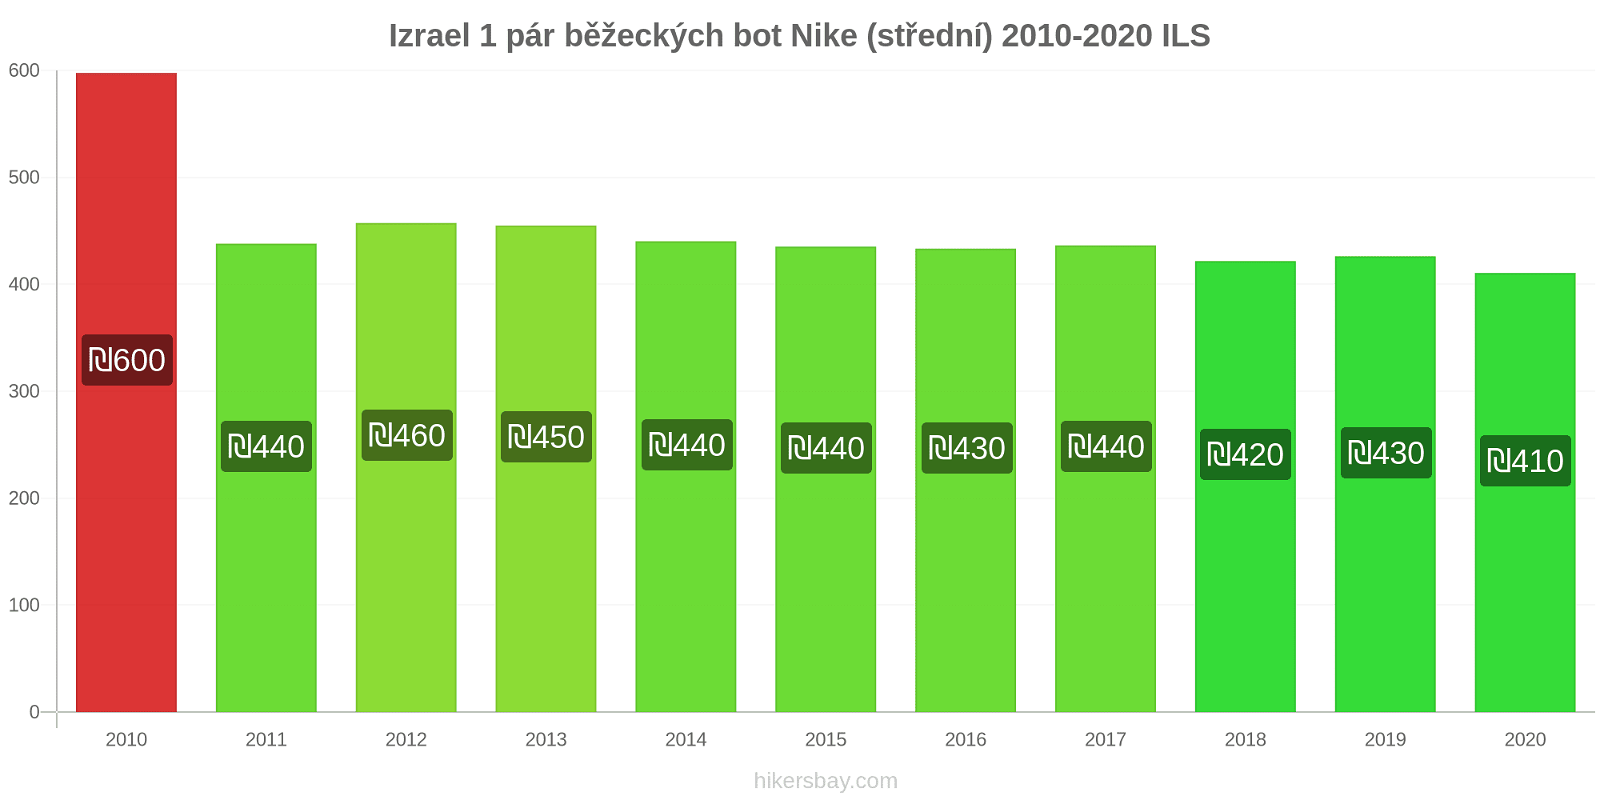 Izrael změny cen 1 pár běžeckých bot Nike (střední) hikersbay.com